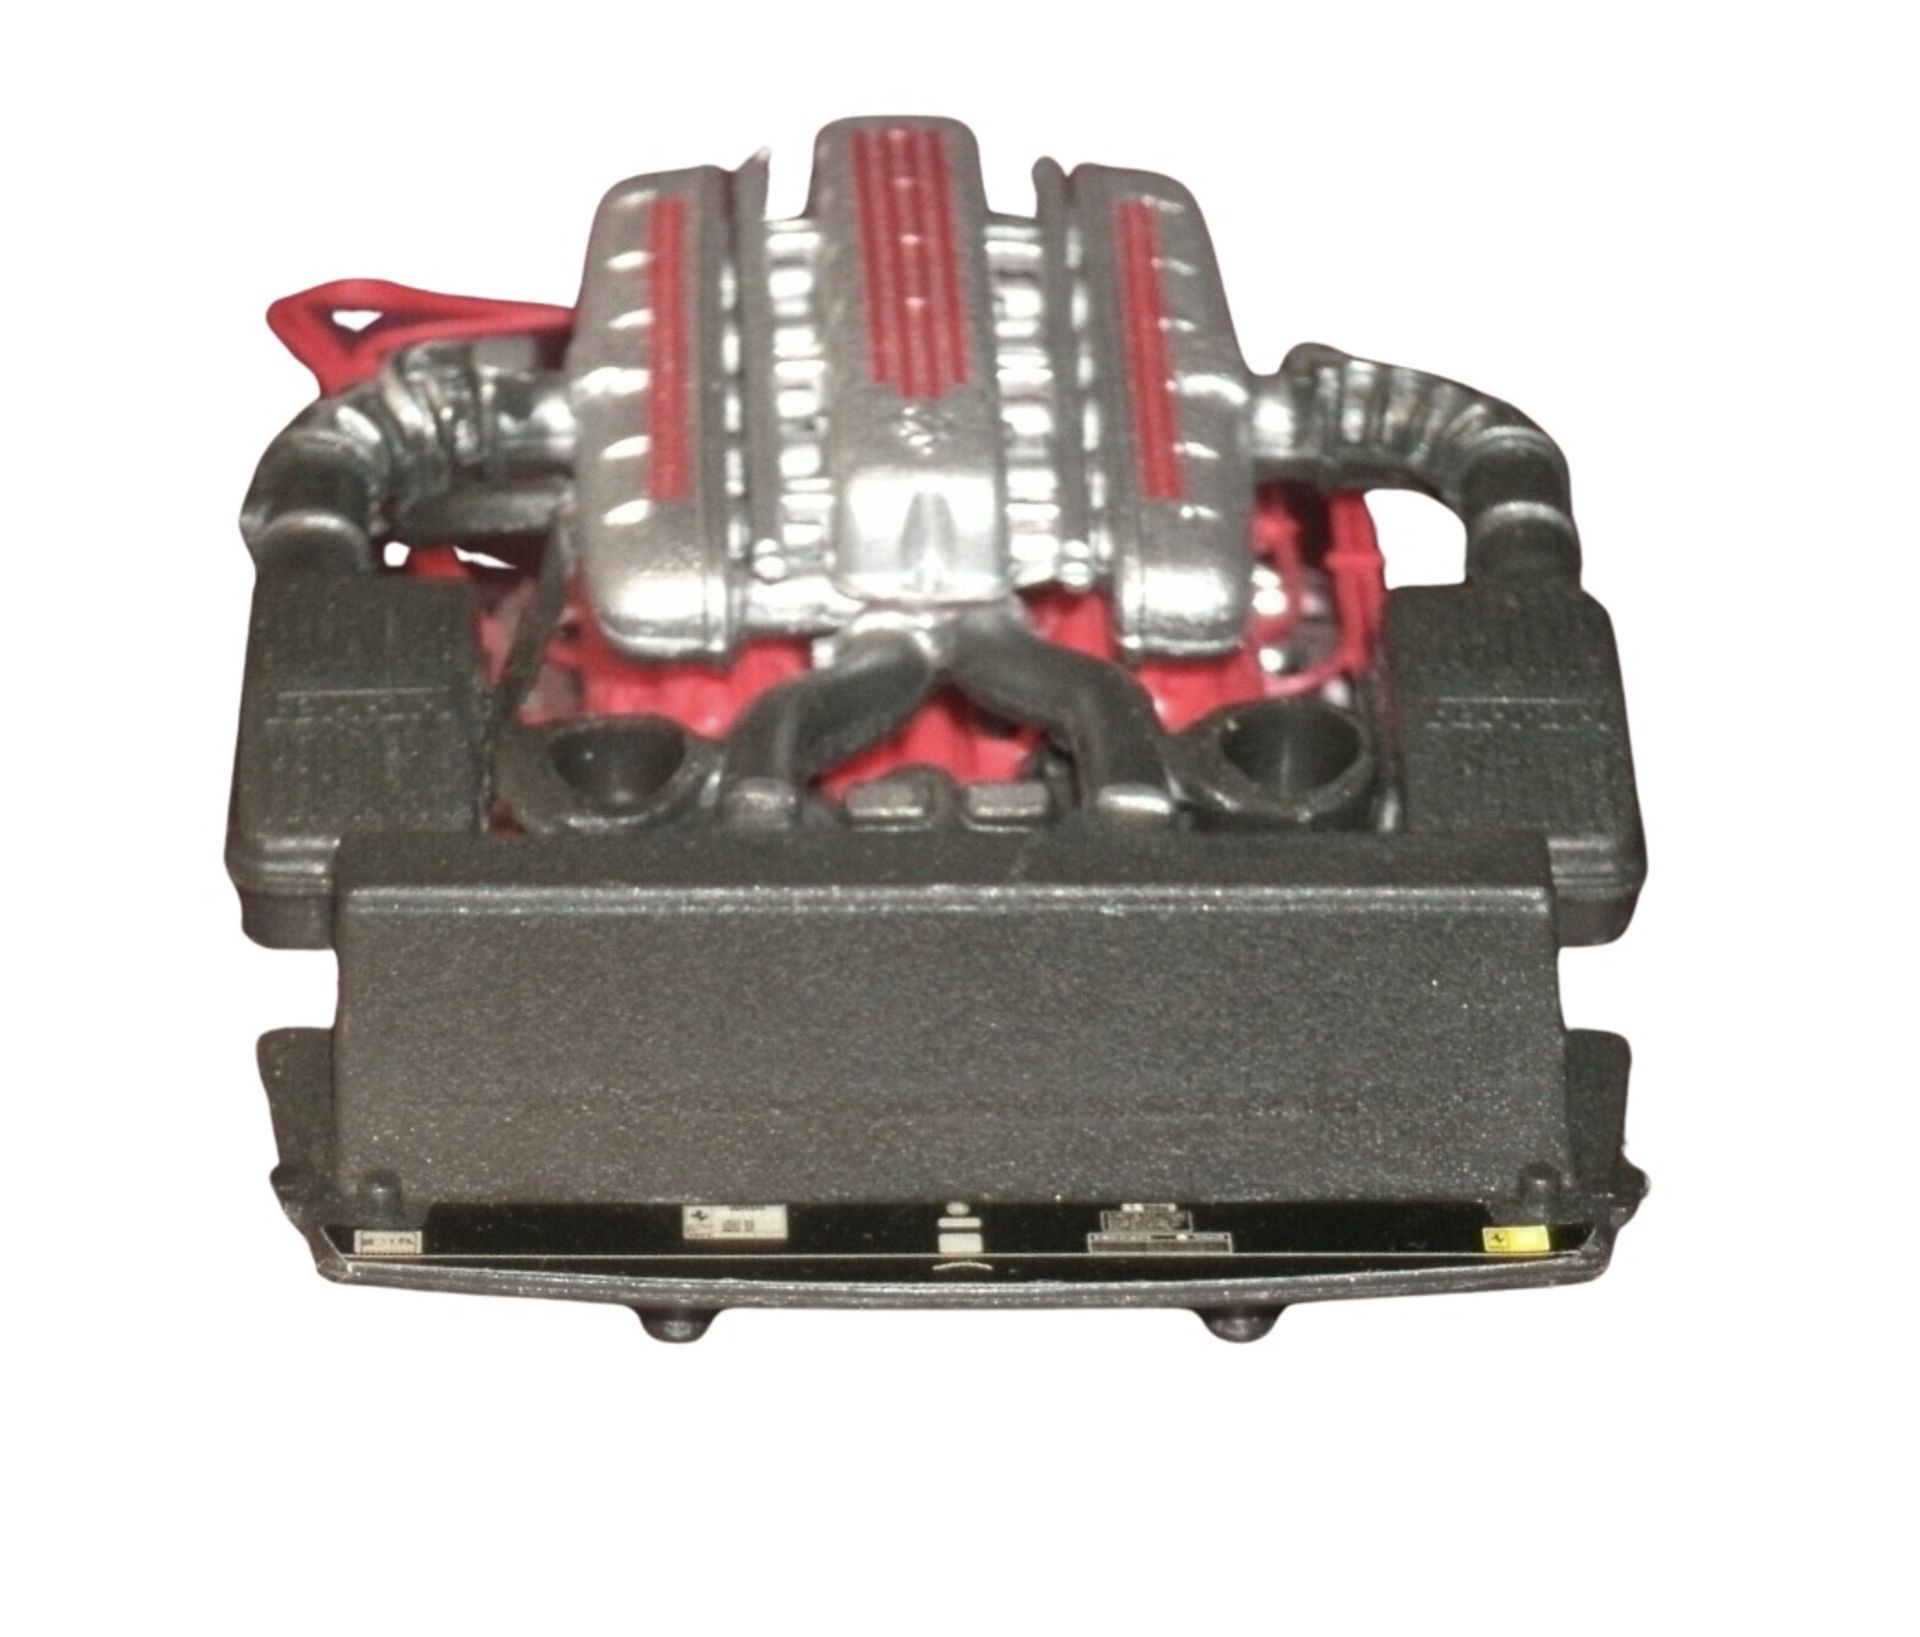 1/18 Scale Ferrari 550 Maranello 5.5L V12 Engine Display Desk Model - Image 4 of 6